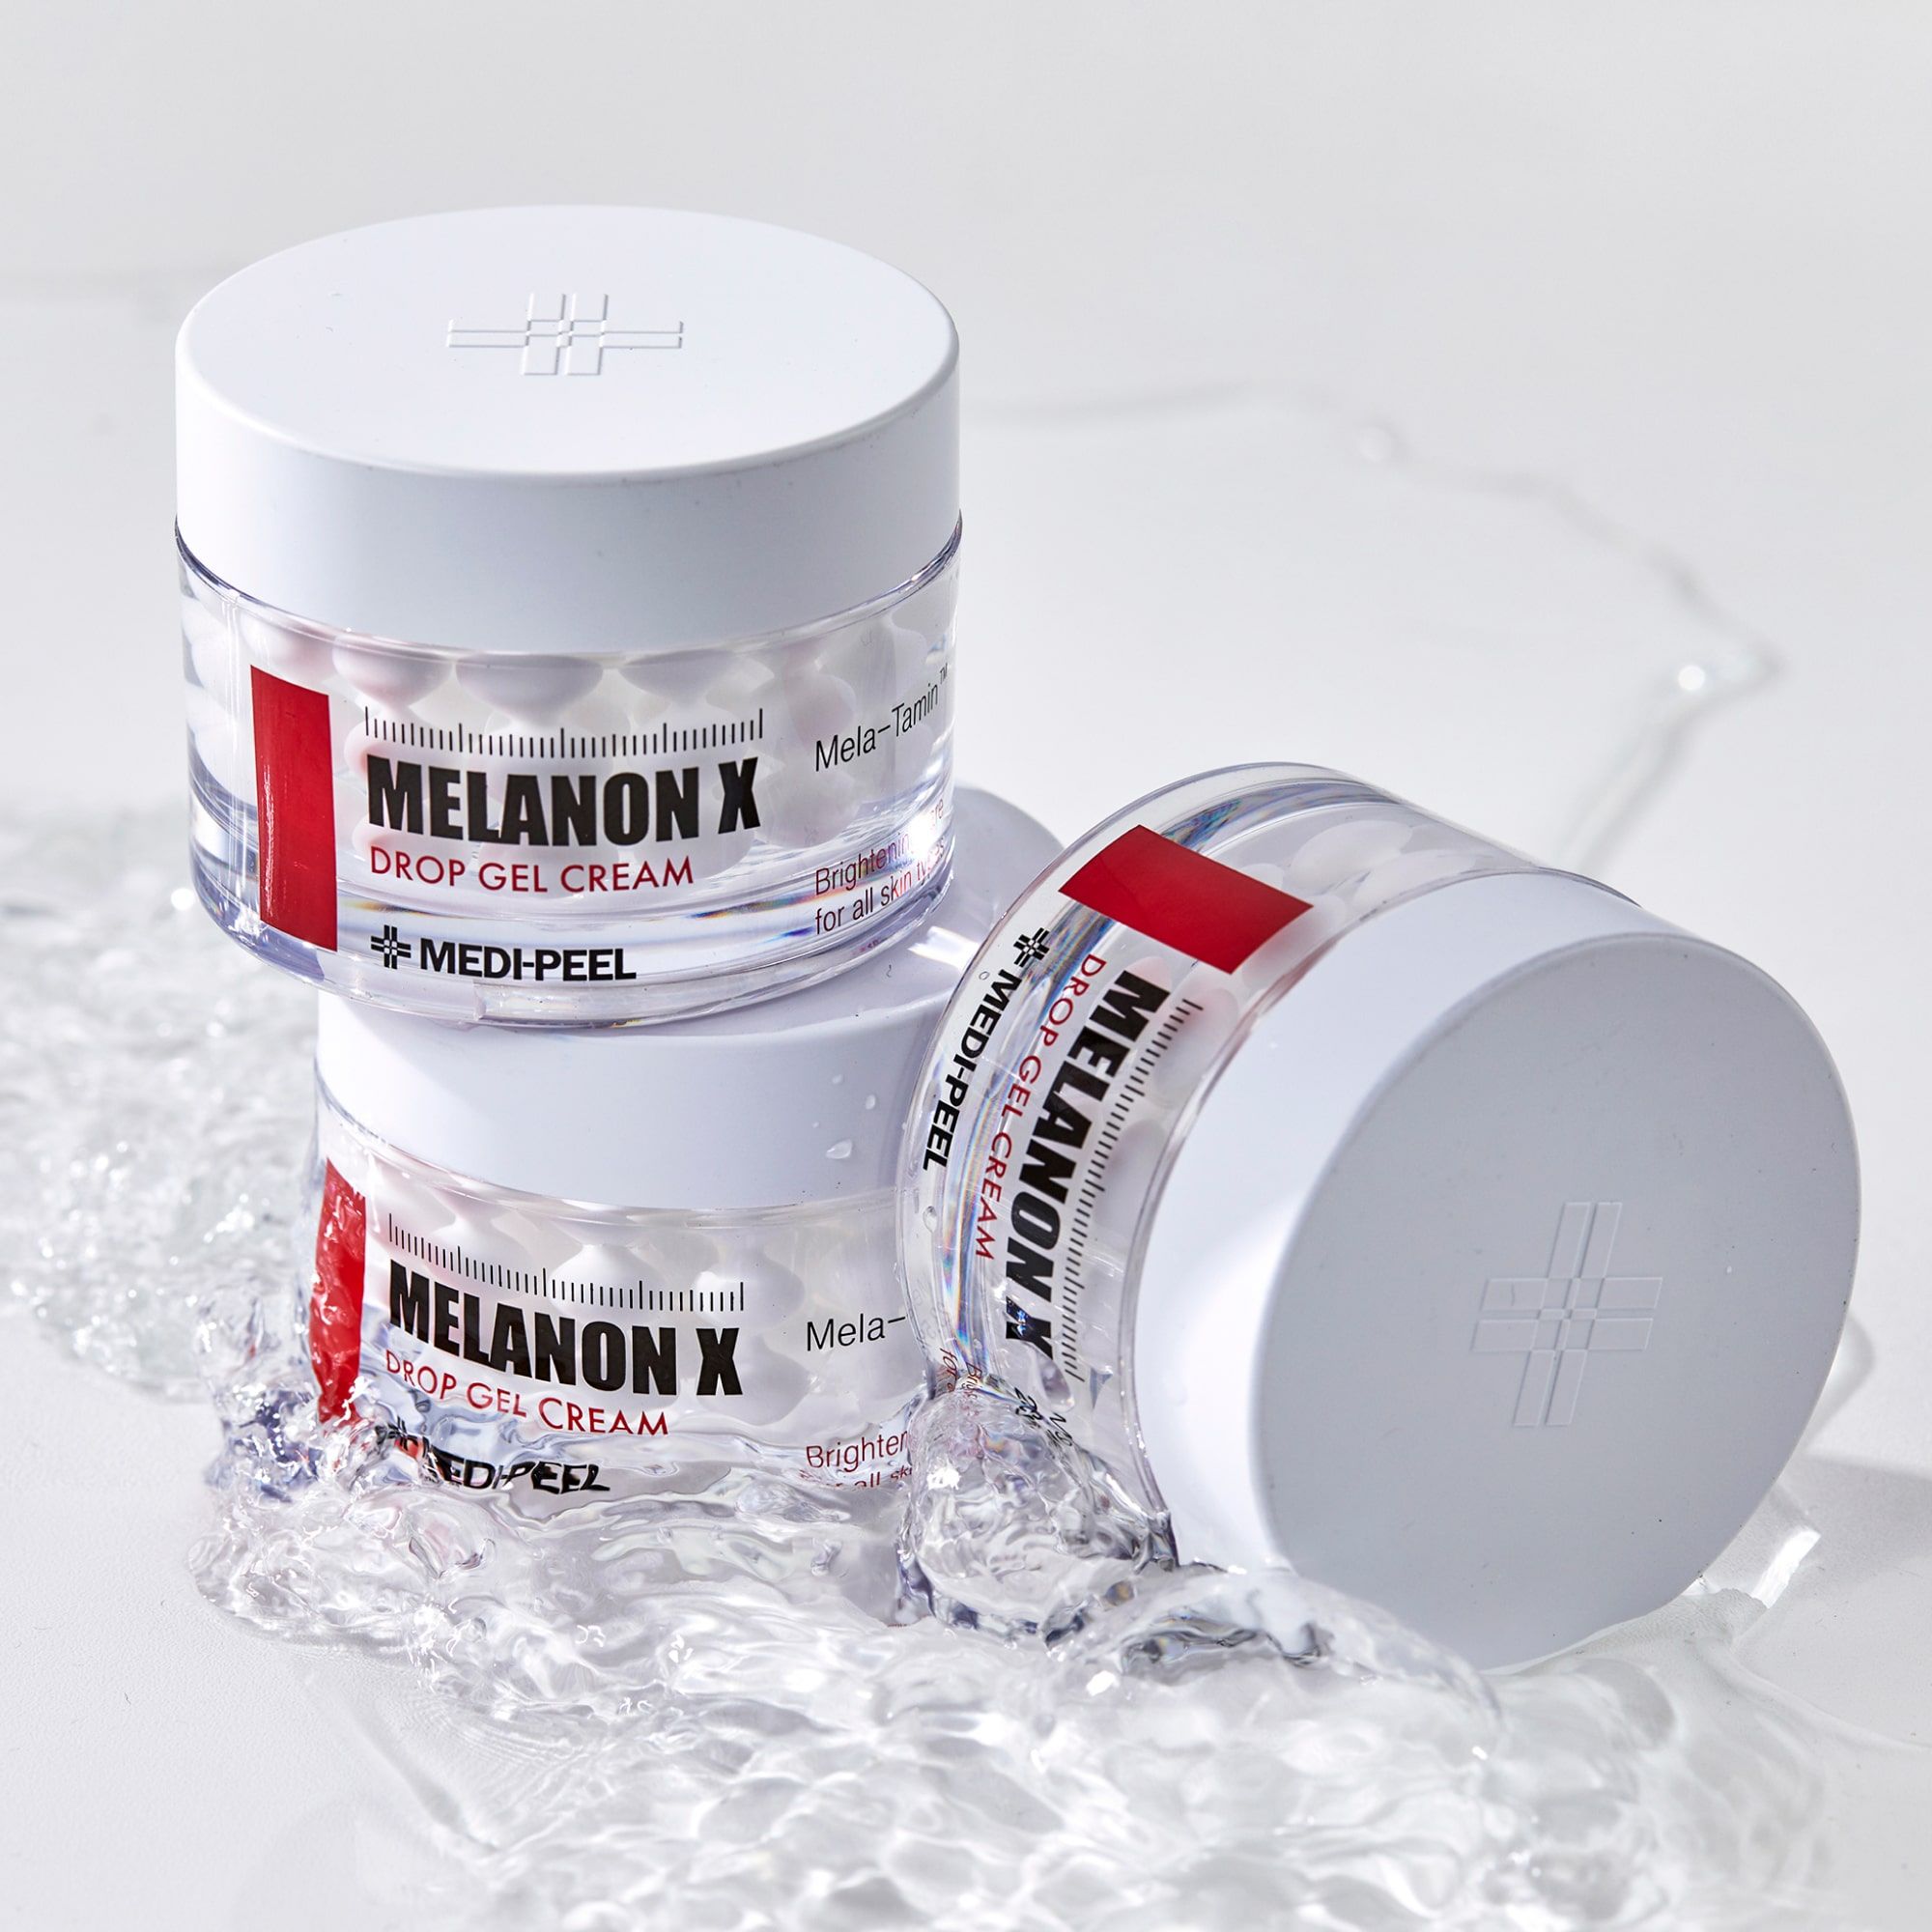 Melanon x Drop Gel Cream. Drop gel